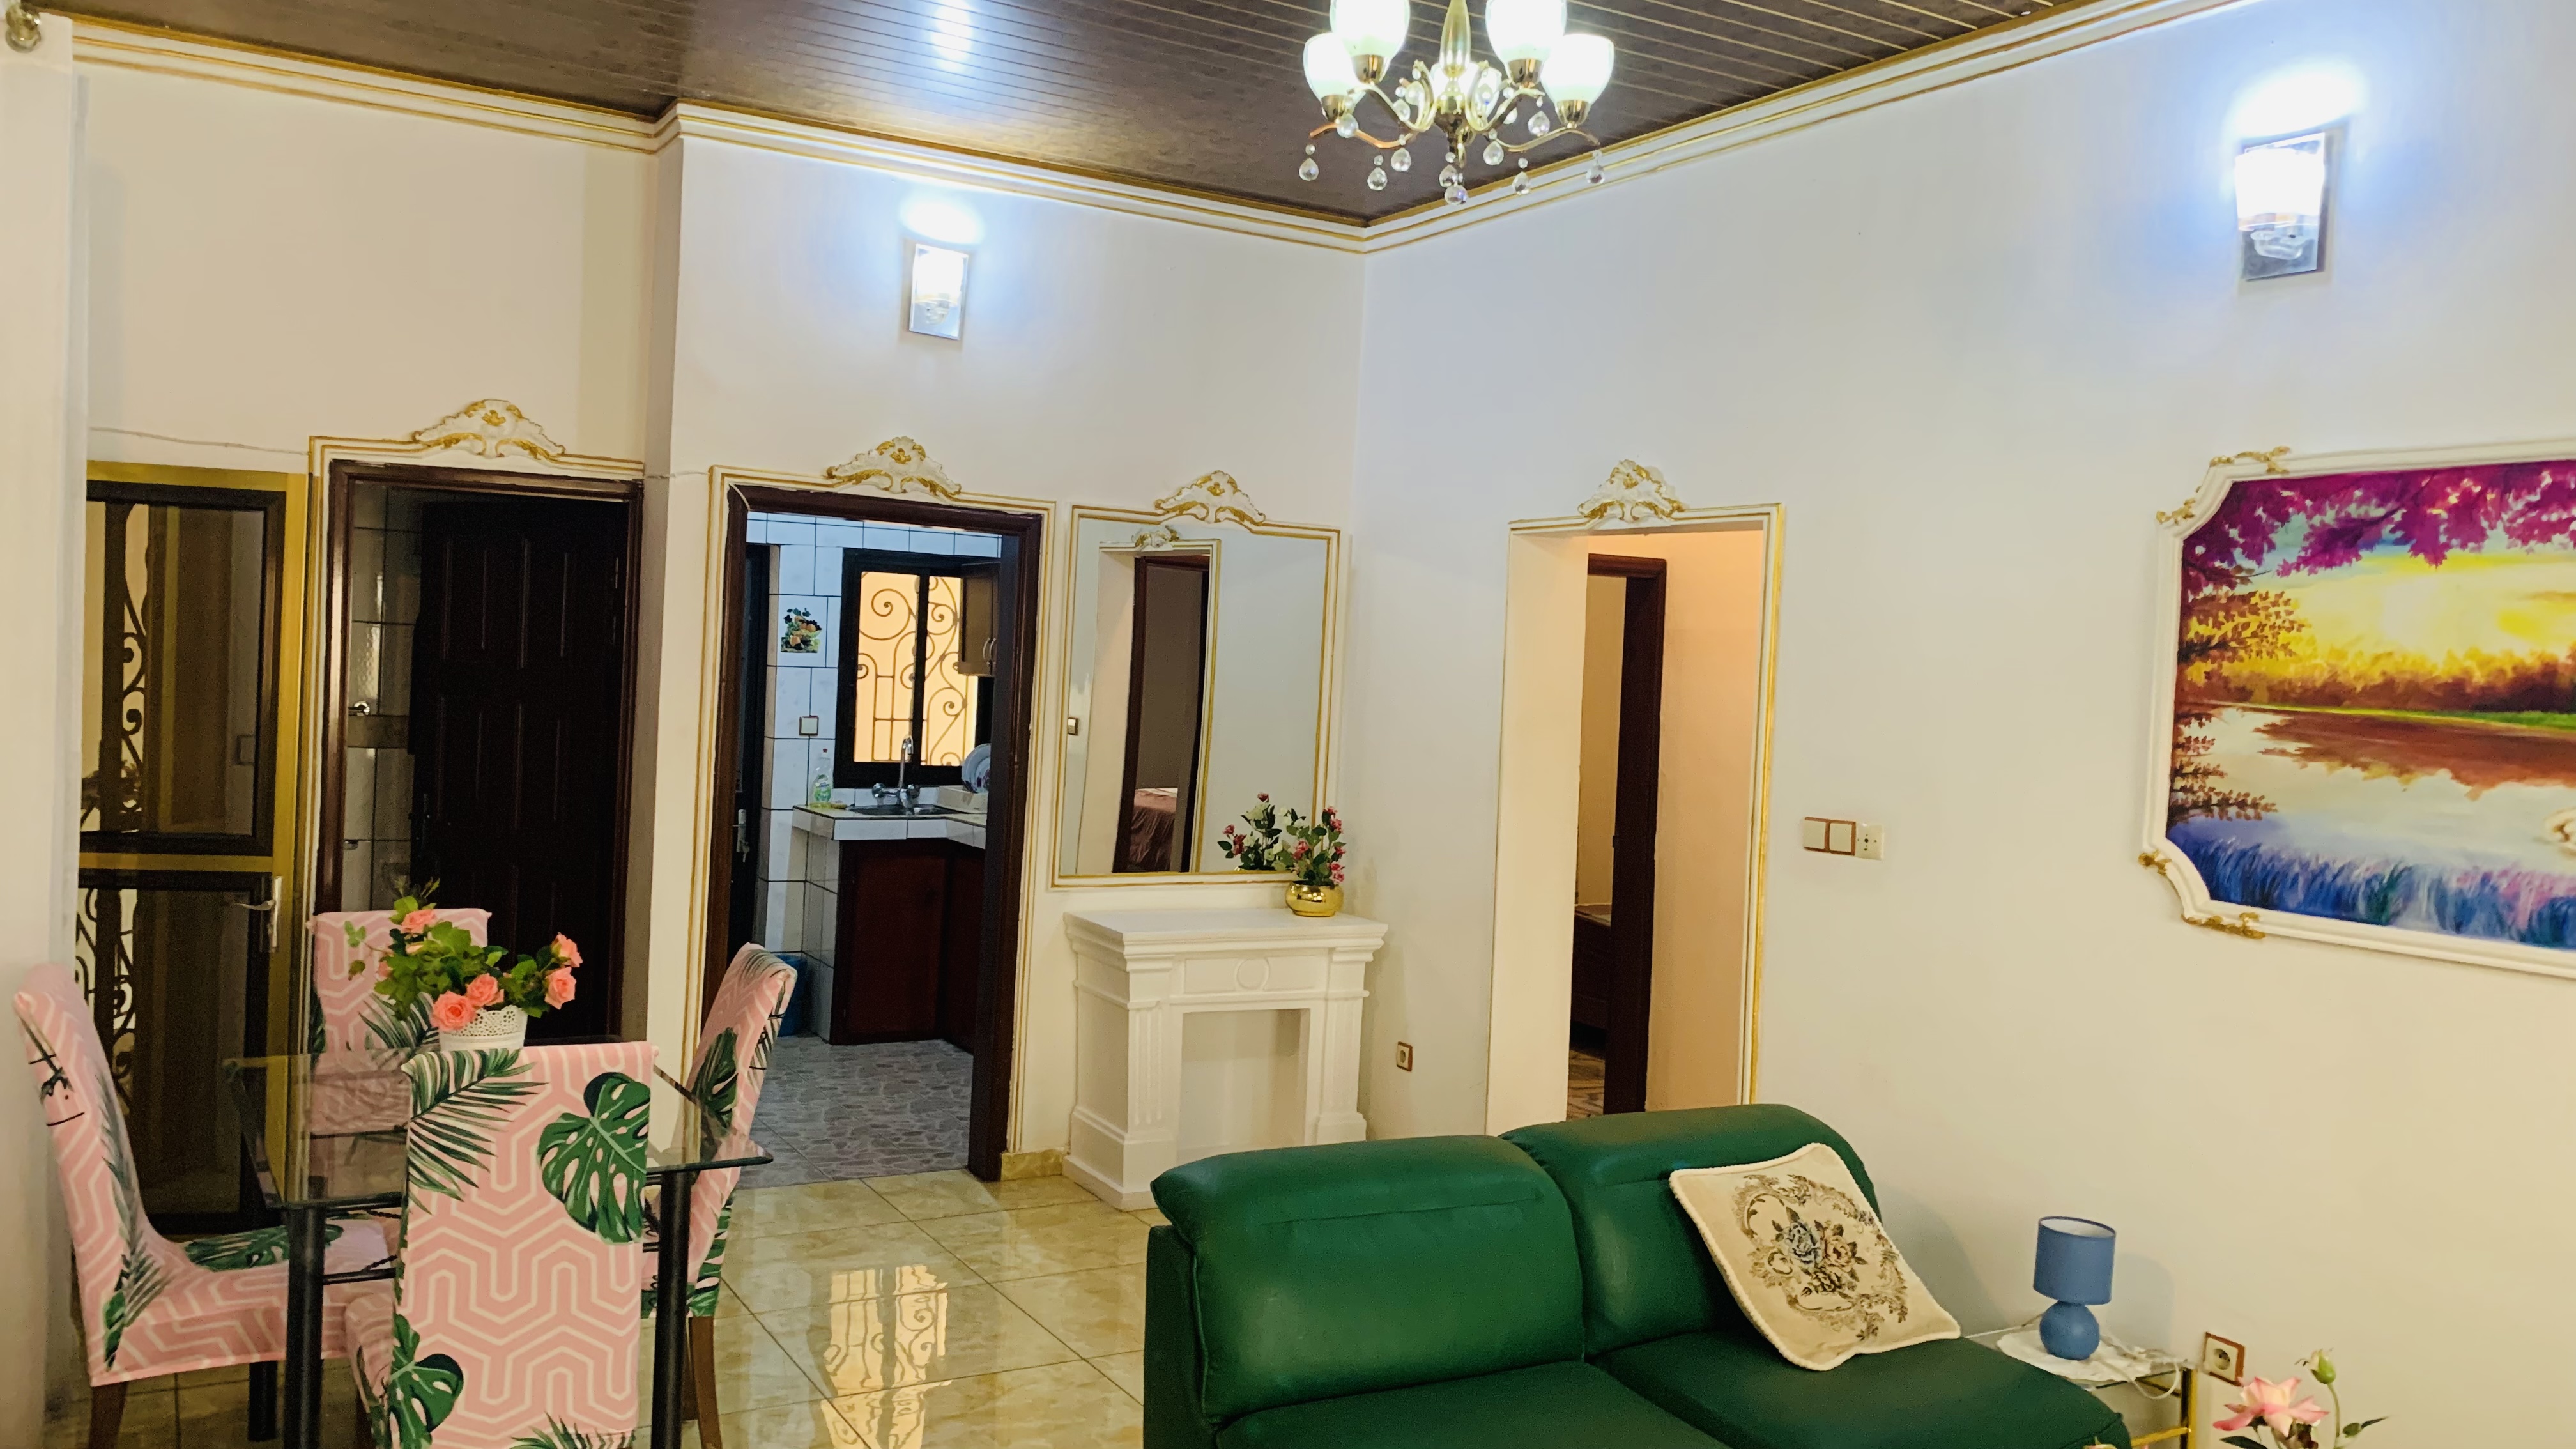 Apartment to rent - Yaoundé, Bastos, Quartier Golf - 1 living room(s), 2 bedroom(s), 1 bathroom(s) - 1 000 000 FCFA / month